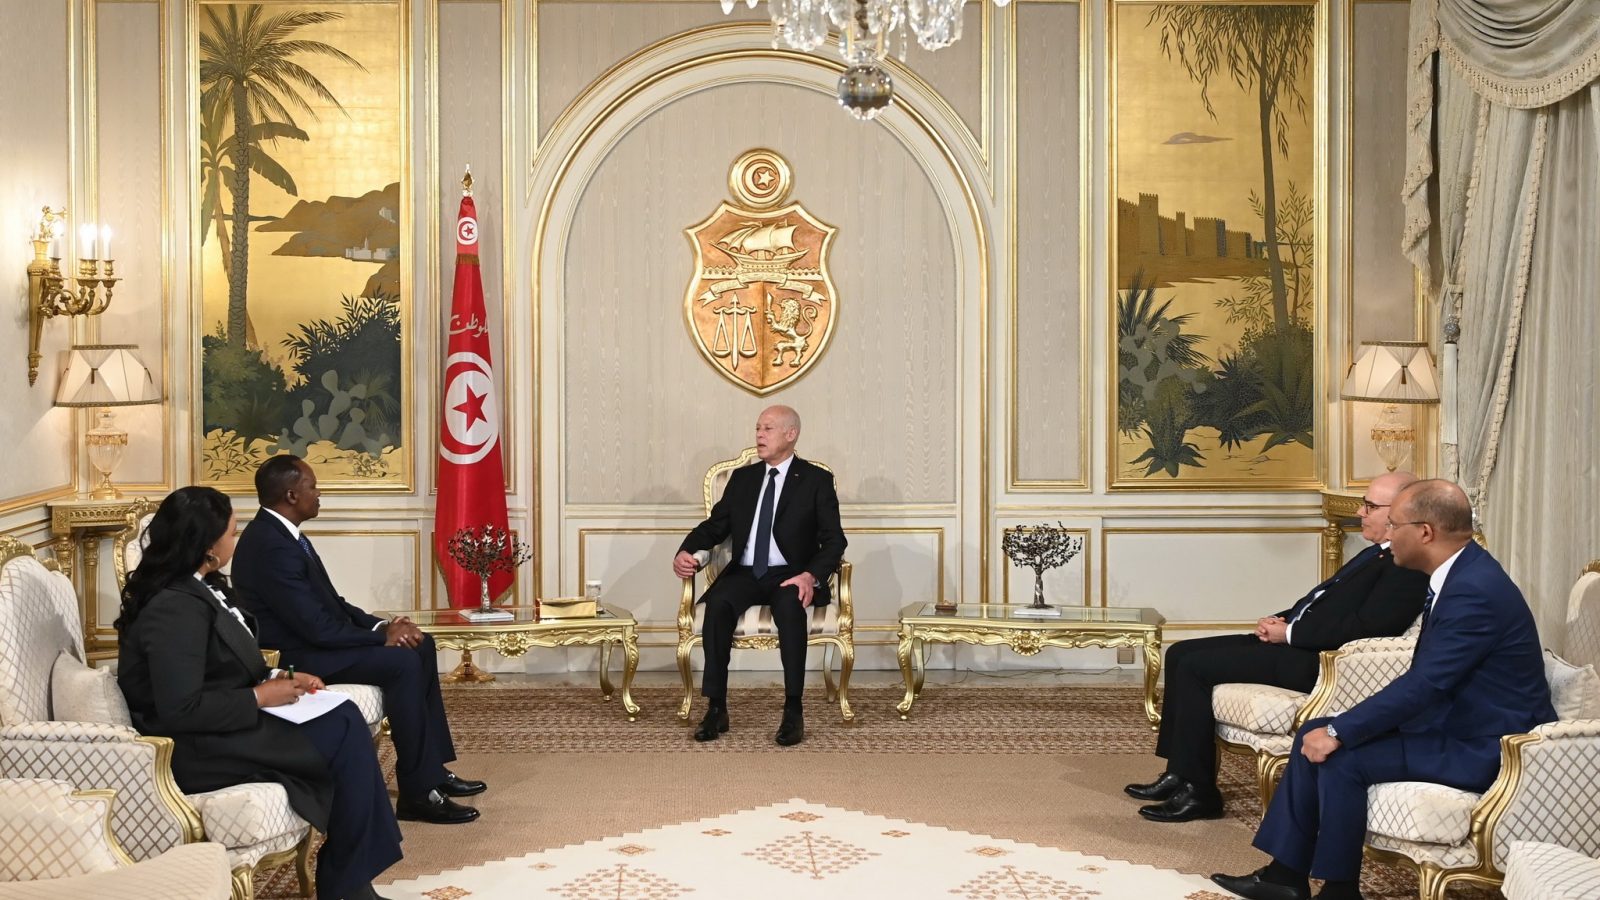 الرئيس يسلم اوراق اعتماد سفراء جدد بتونس (صور)